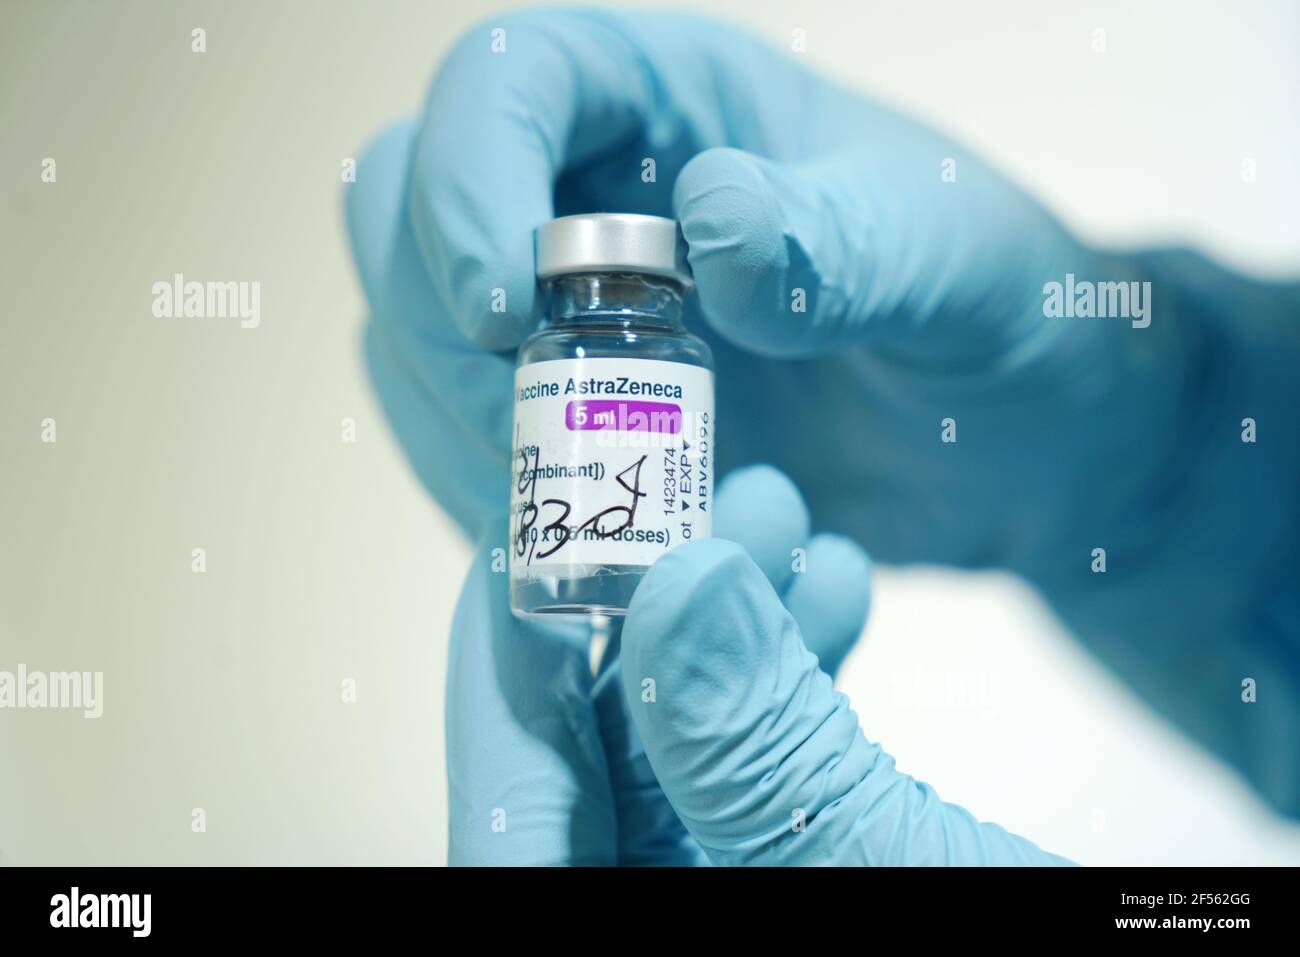 Flacon de vaccin COVID-19 produit par AstraZeneca. La main du médecin dans un gant médical tient une bouteille avec un vaccin coronavirus. Mise au point sélective. Turin, Banque D'Images